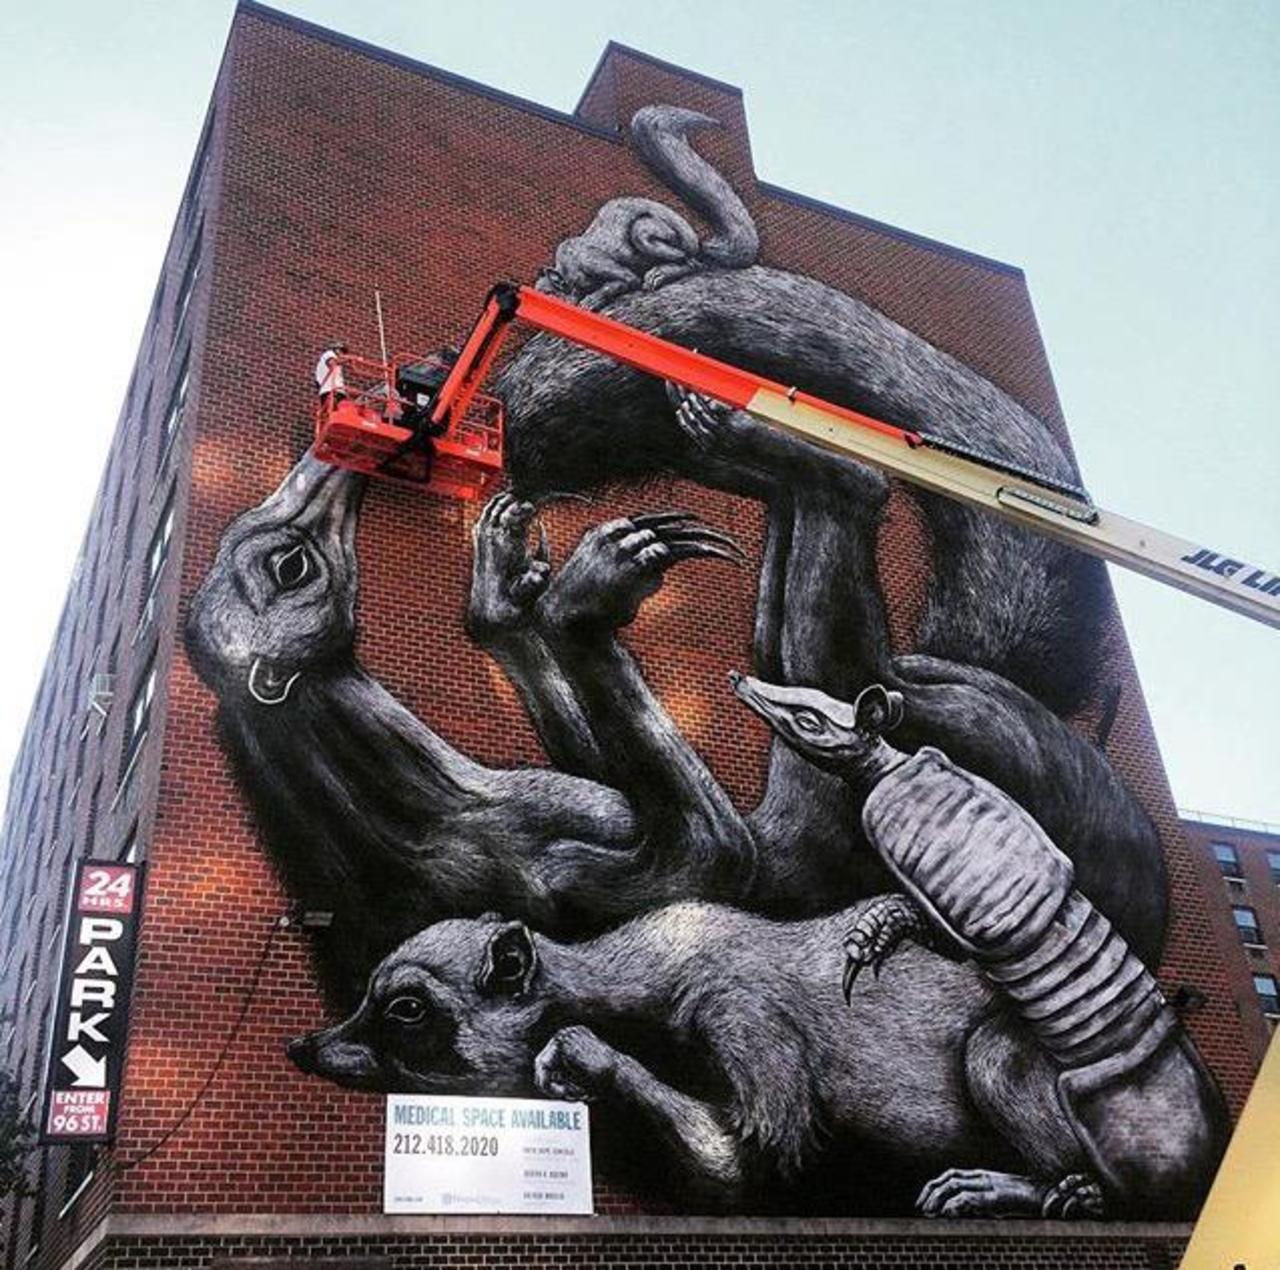 Street Art in progress by ROA in NYC

#art #graffiti #mural #streetart http://t.co/d53GPCY289